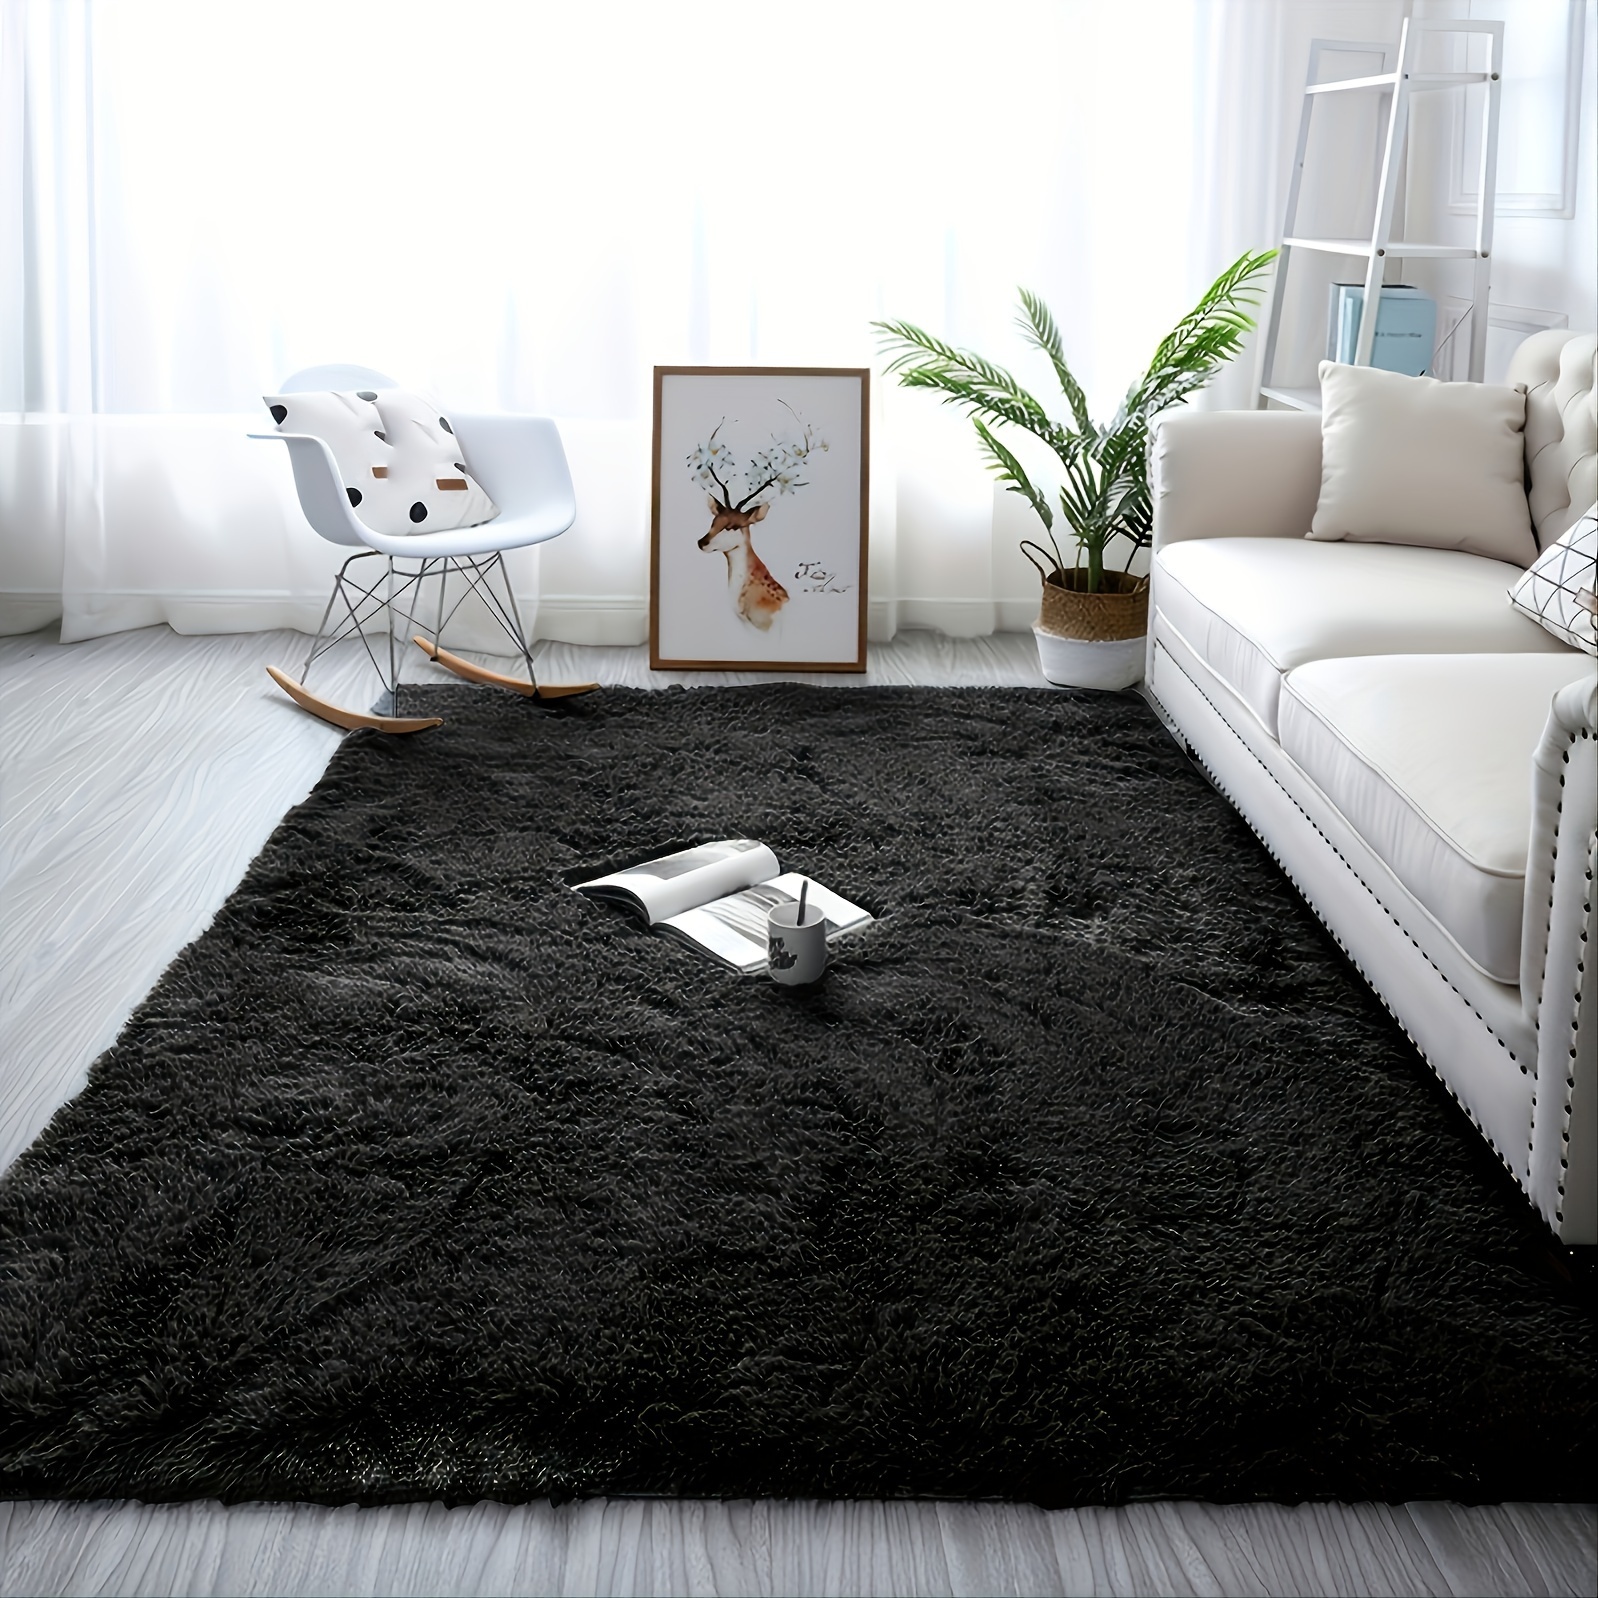 Home 1pc Soft Carpet Living Room Carpet Anti-slip Fluffy Bedroom